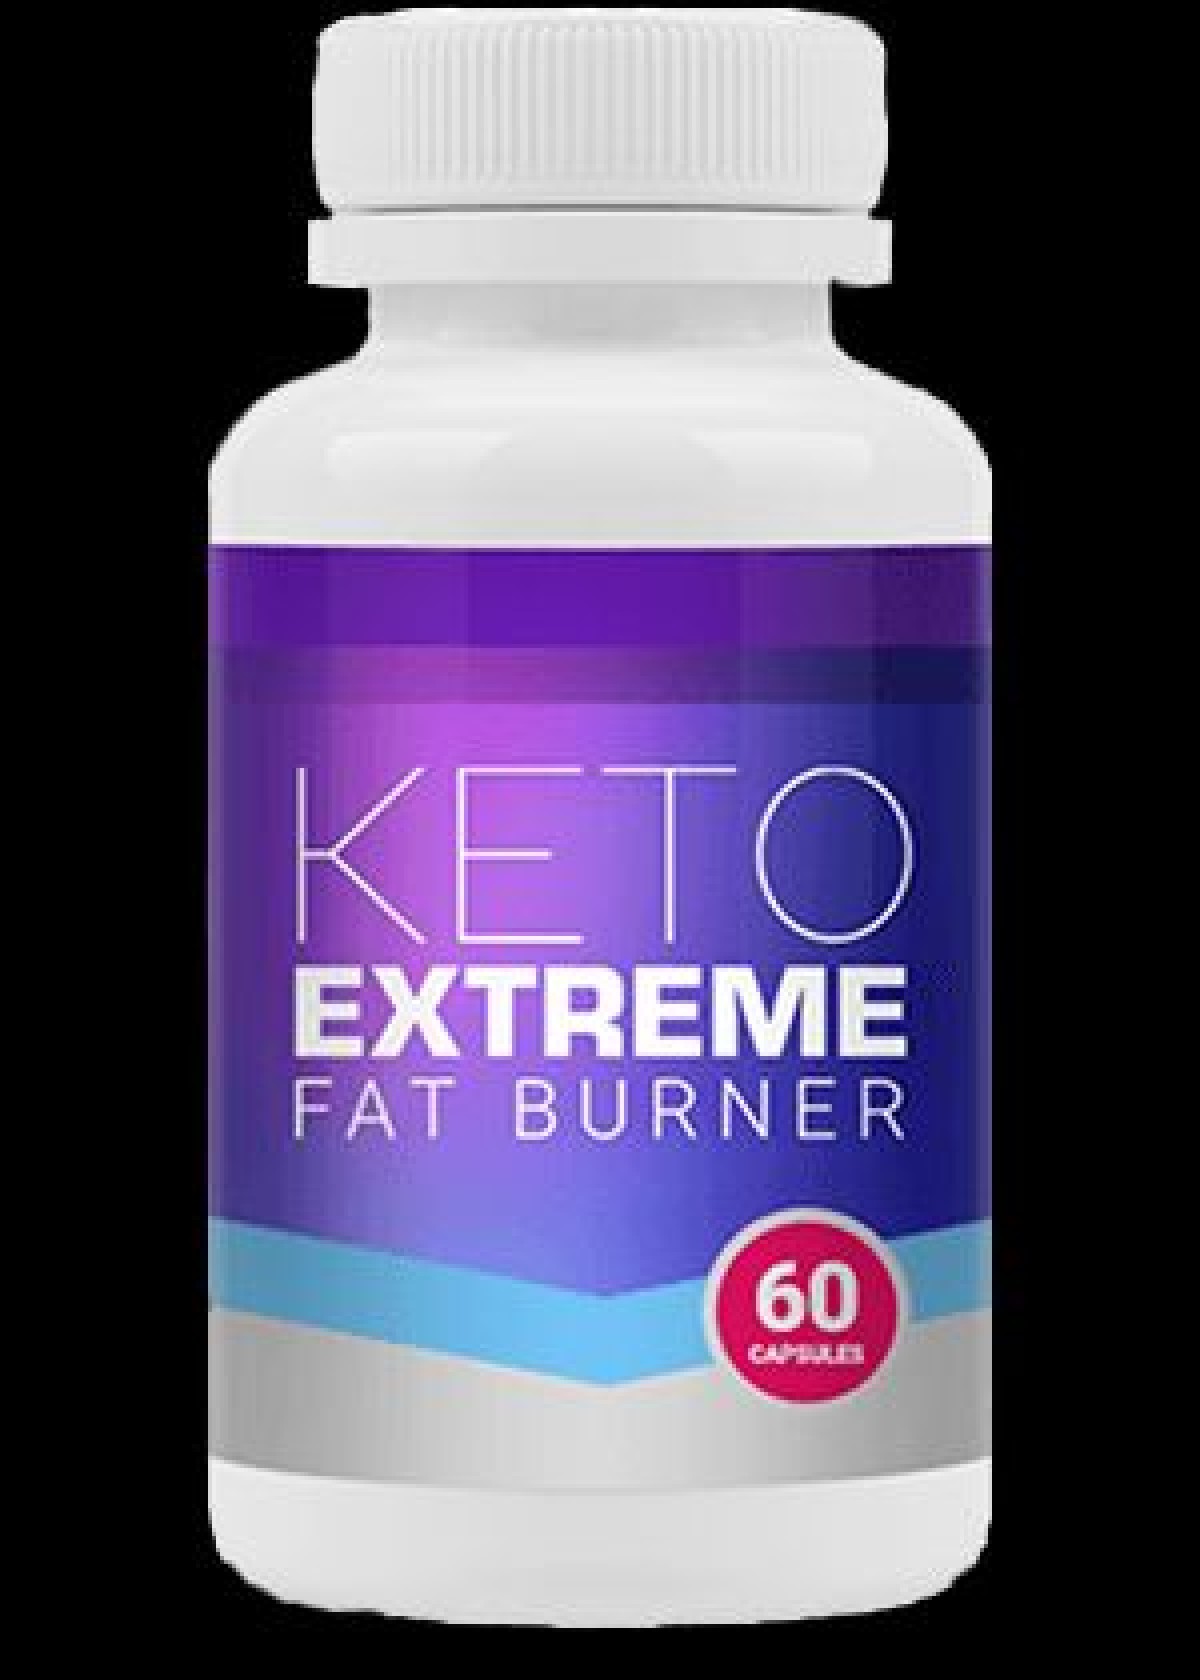 Keto Extreme Fat Burner - kaufen - in apotheke - bei dm - in deutschland - in Hersteller-Website